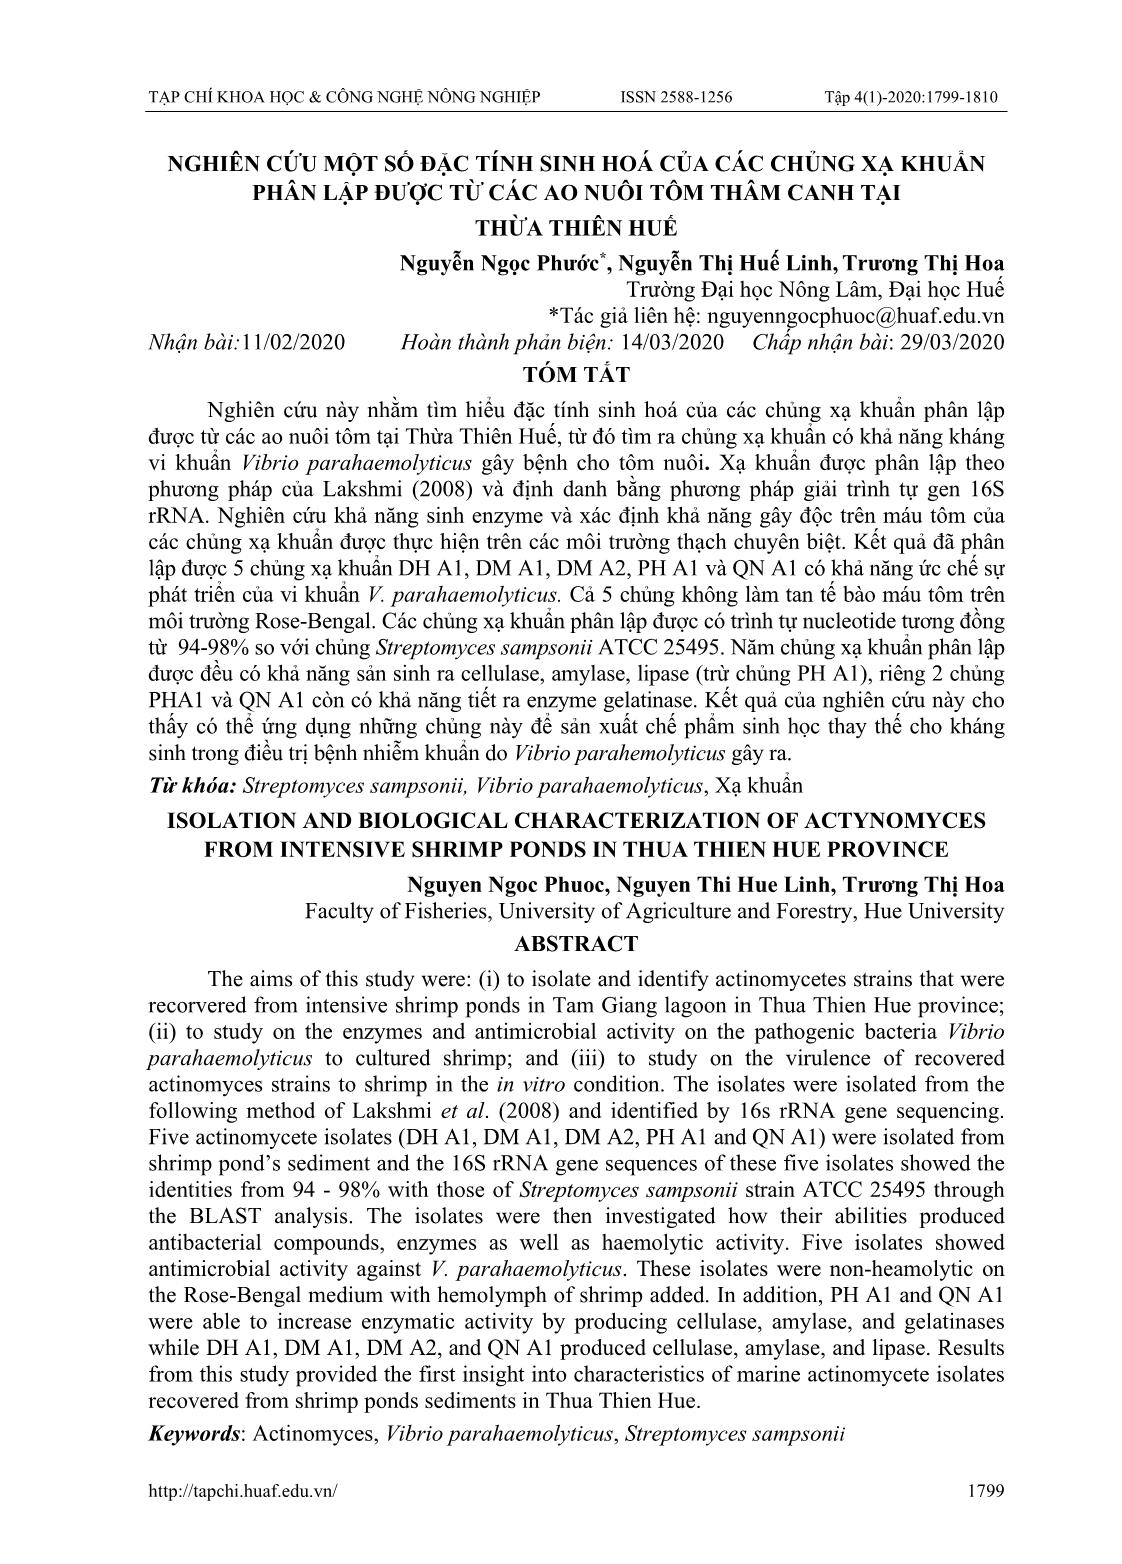 Nghiên cứu một số đặc tính sinh hoá của các chủng xạ khuẩn phân lập được từ các ao nuôi tôm thâm canh tại Thừa Thiên Huế trang 1